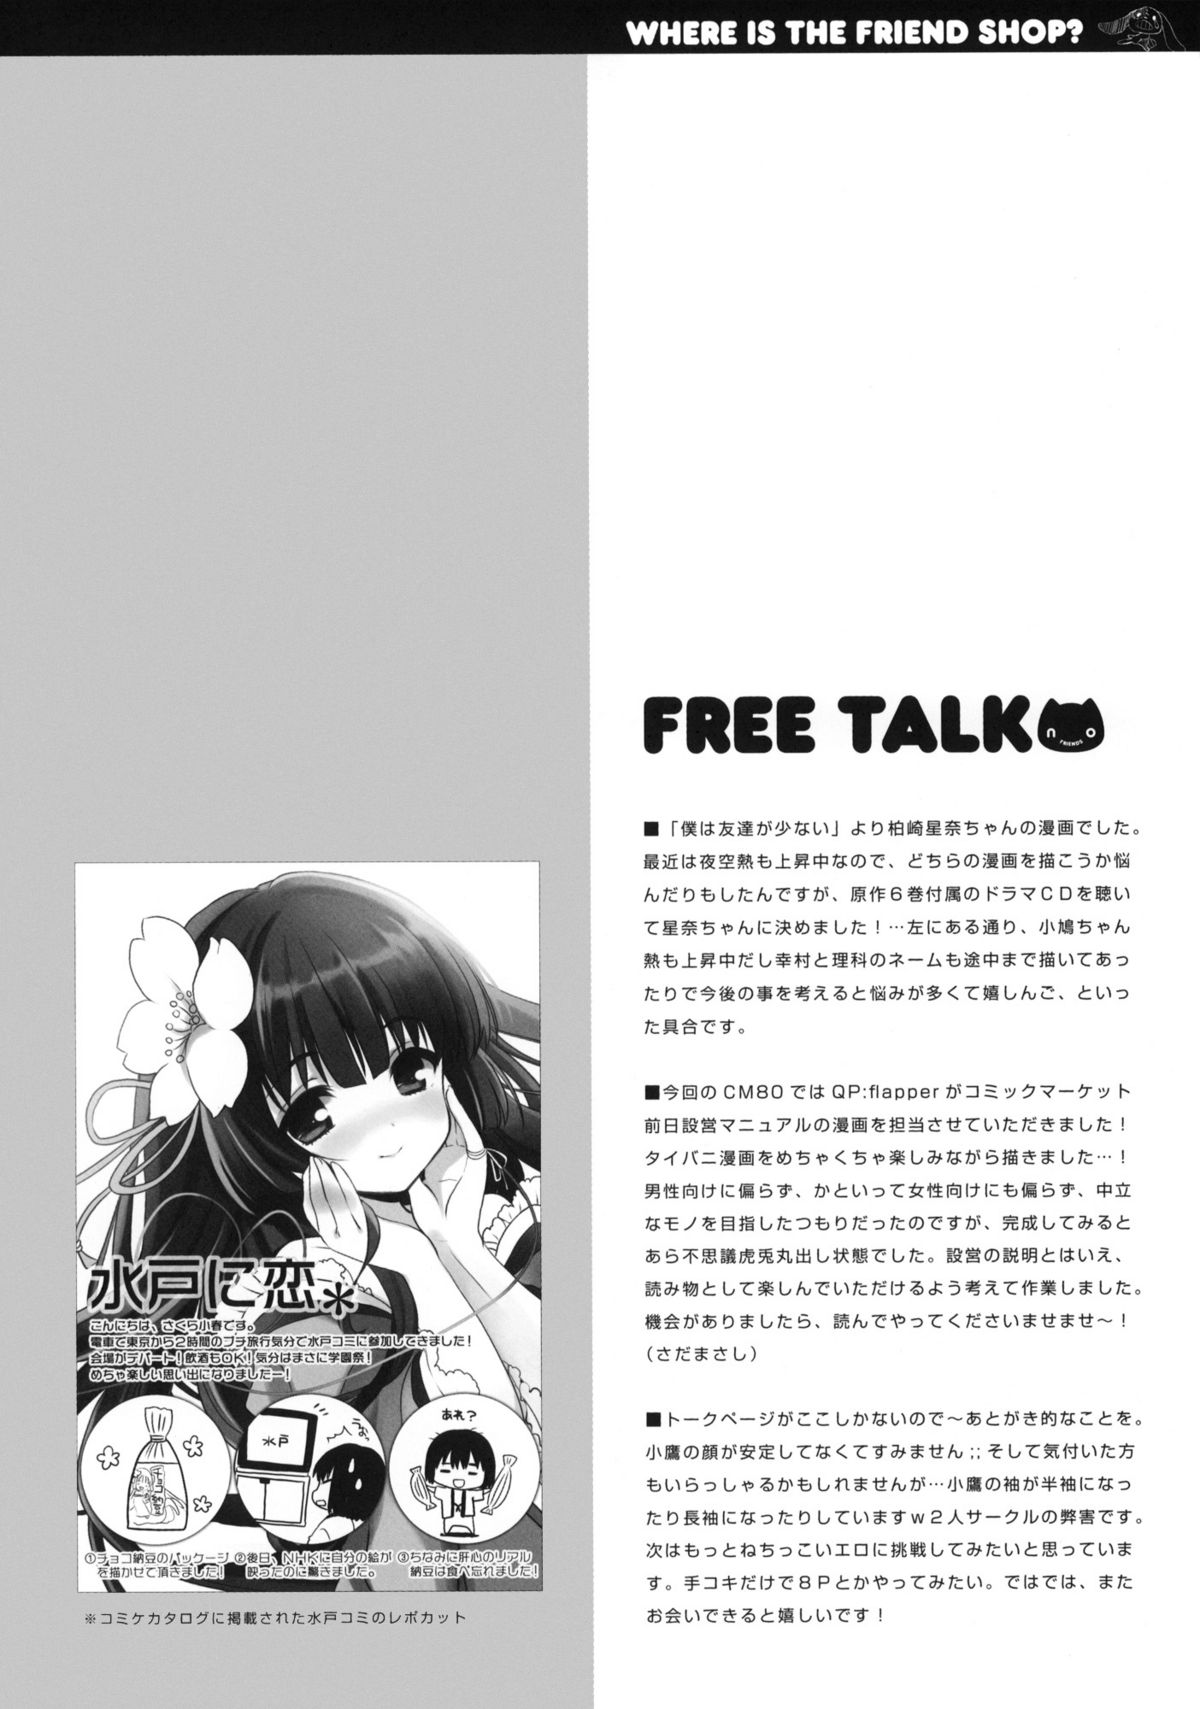 (C80) [QP:flapper (Sakura Koharu, Ohara Tometa)] Where is the Friend shop? (Boku wa Tomodachi ga Sukunai) page 16 full